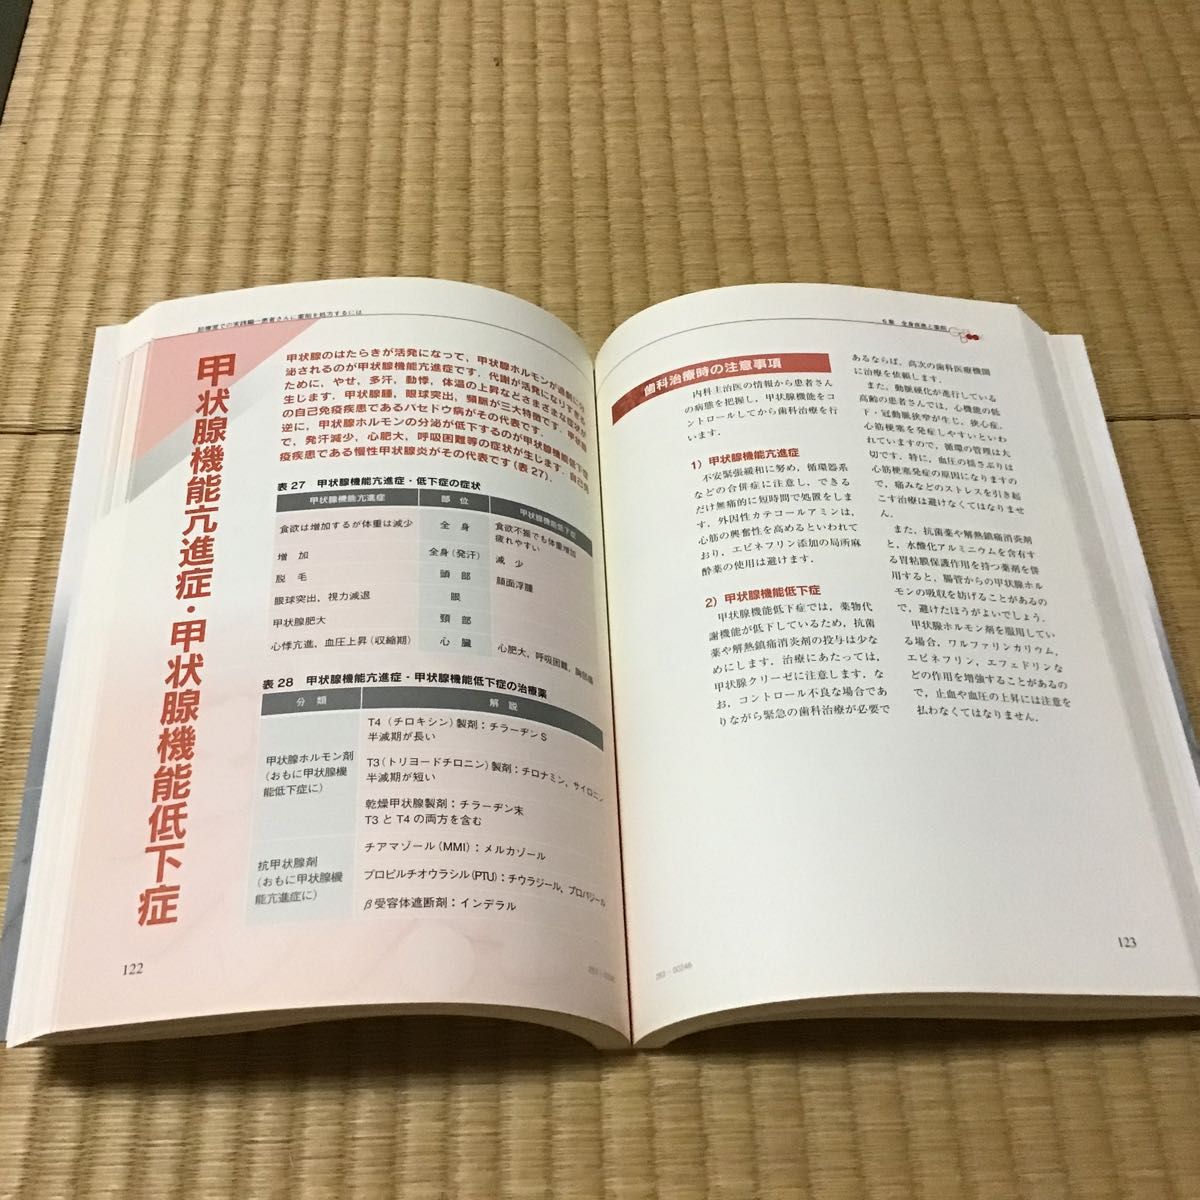 くすりの完全ガイド　五十嵐治義／編集　医歯薬出版　CD-ROM付き　2005年 古書